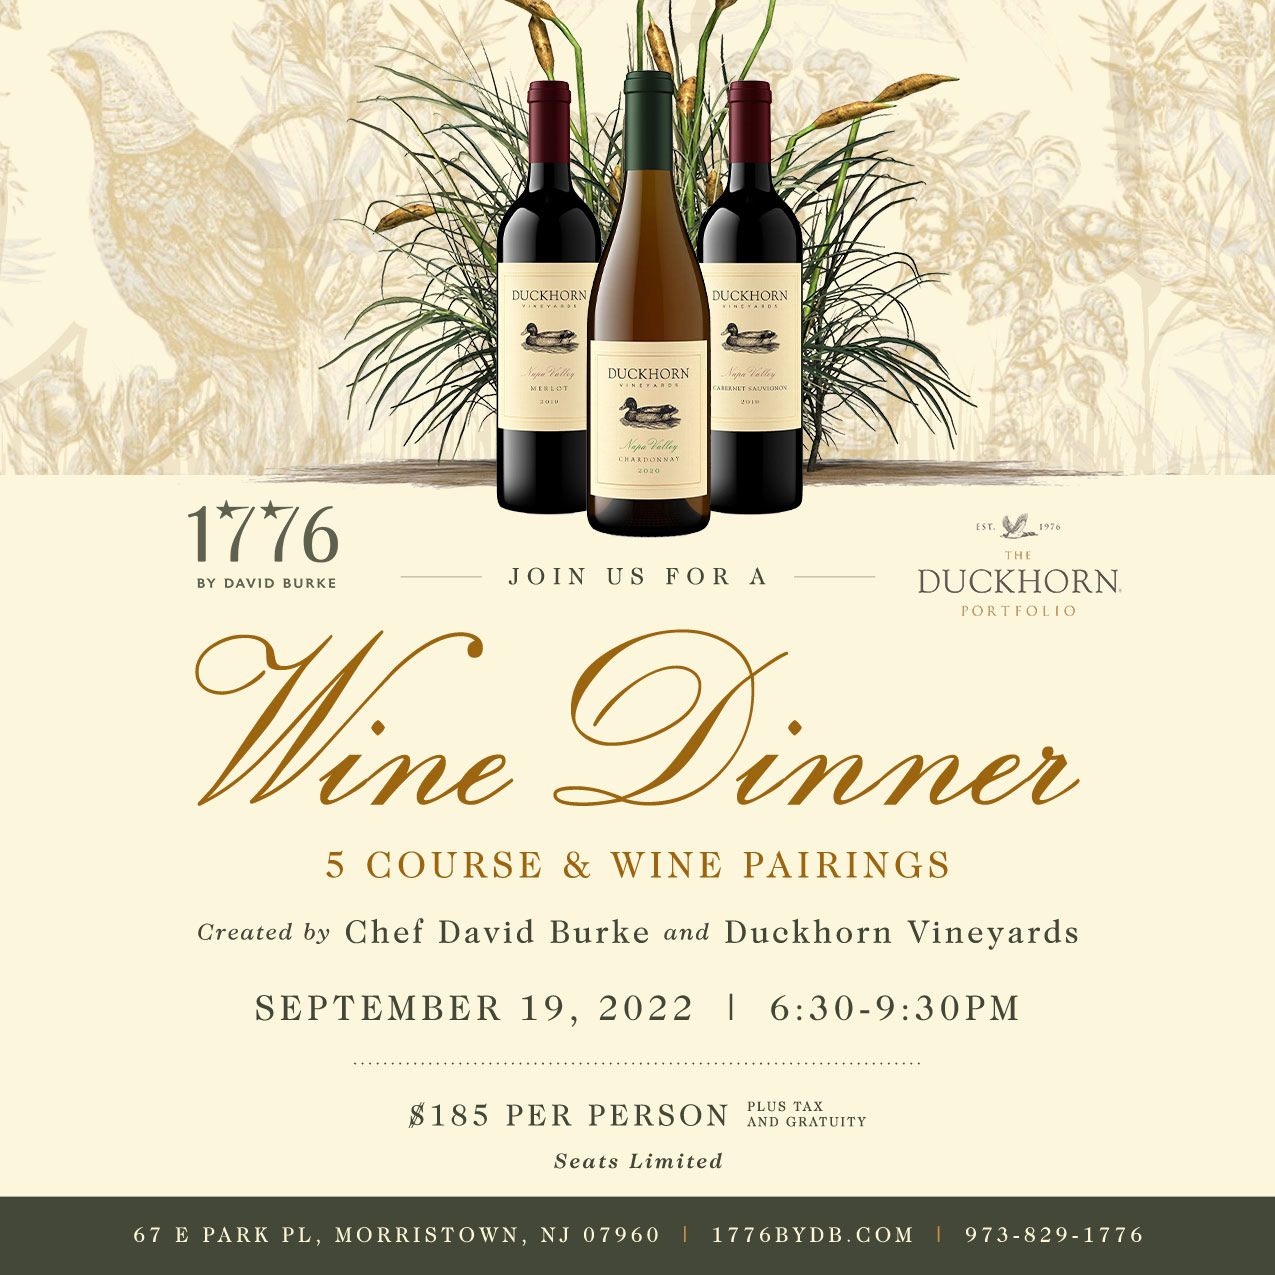 Buckhorn Wine Dinner September 19, 2022